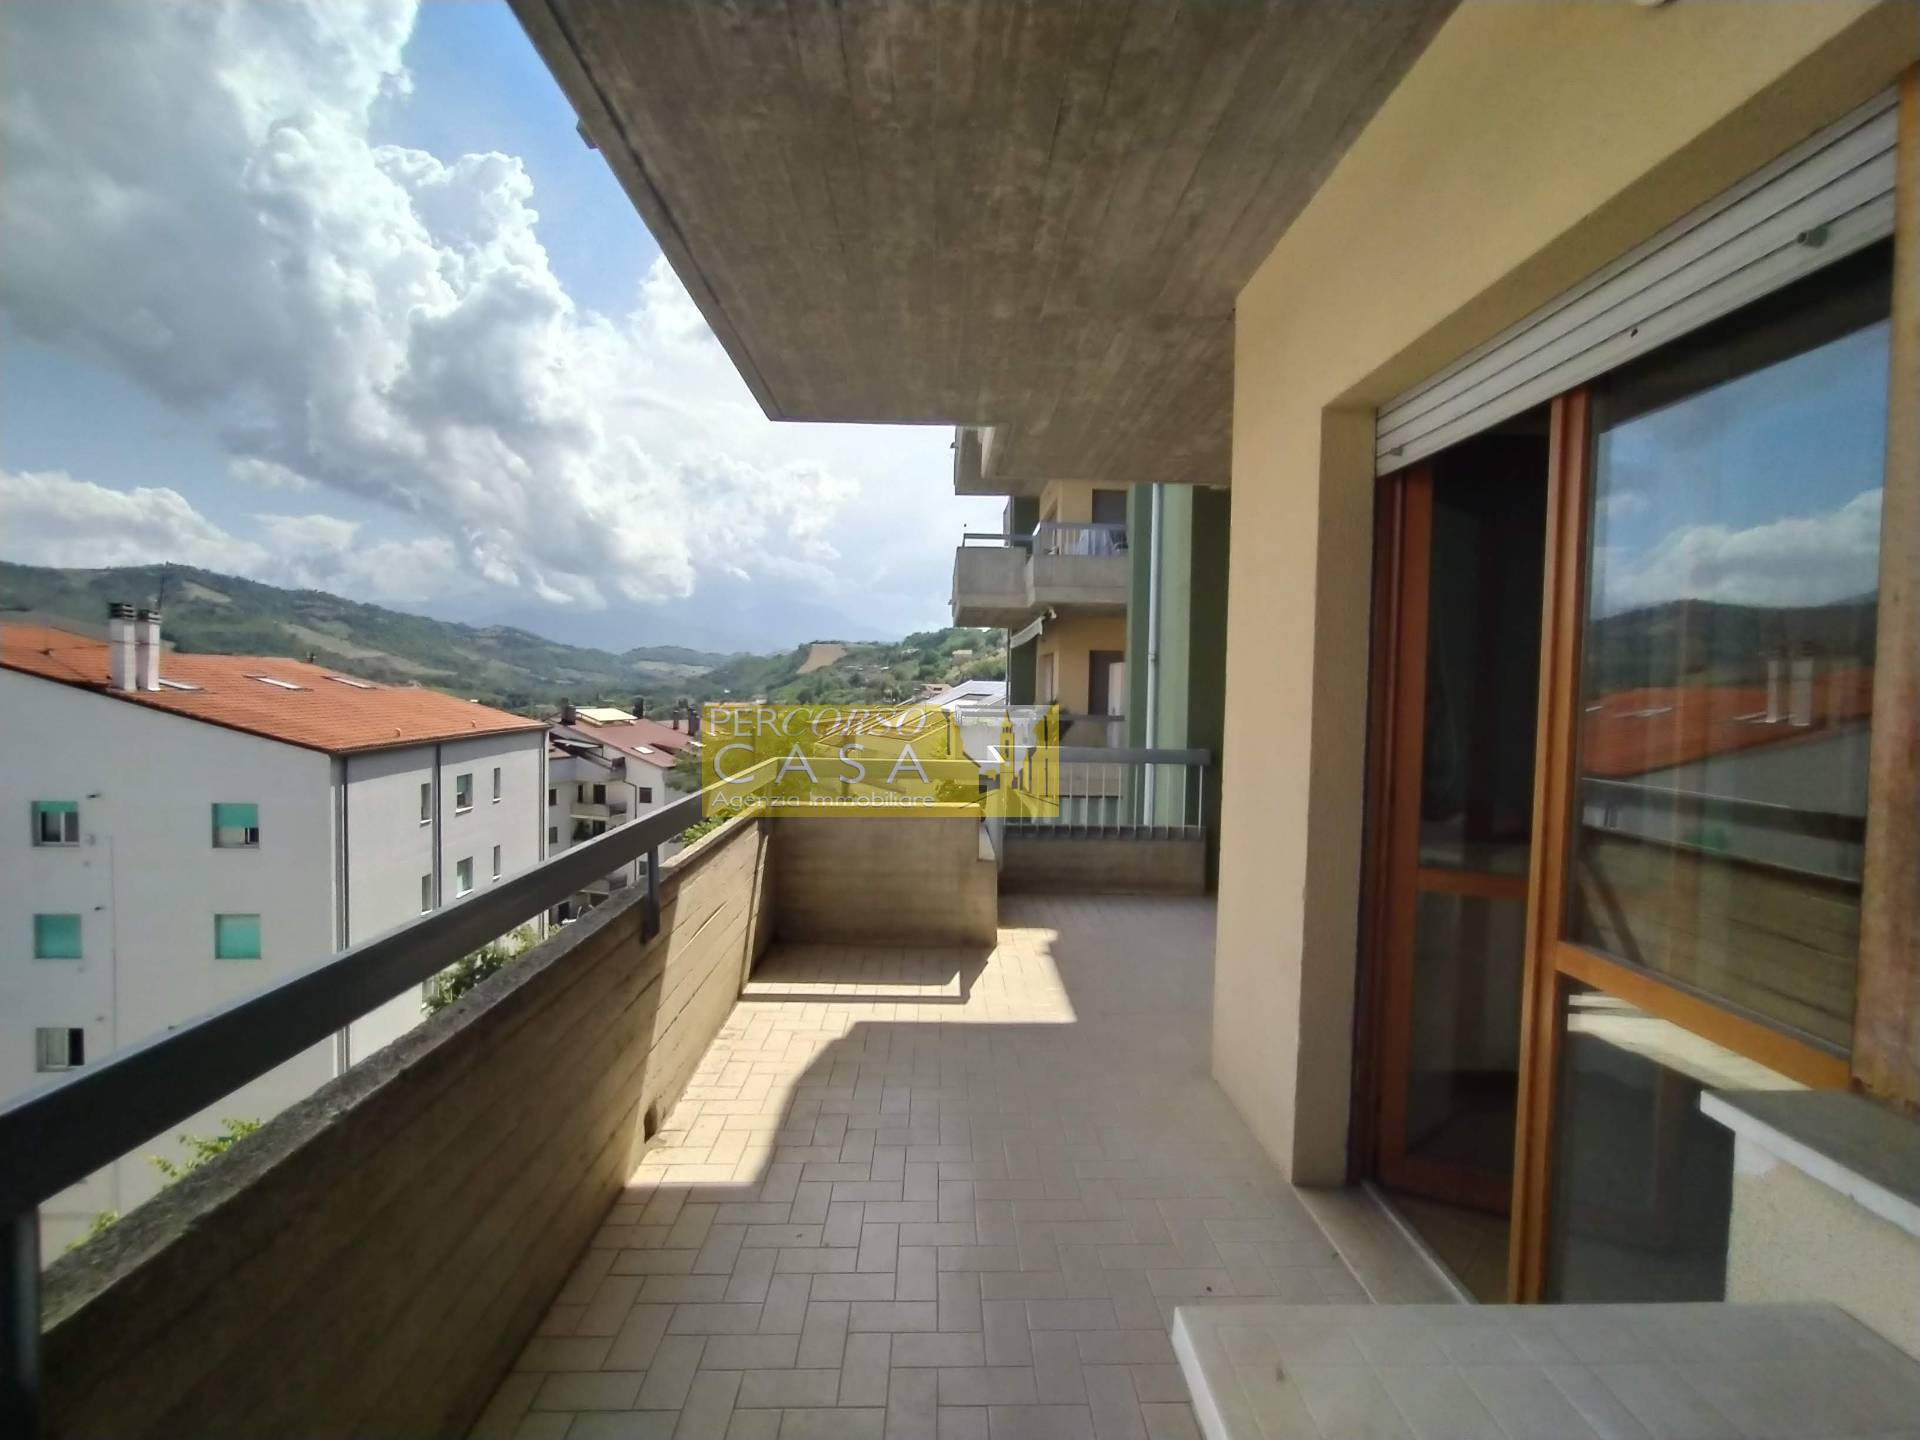 Appartamento in vendita a Teramo, 6 locali, zona Località: ViaCona, prezzo € 85.000 | PortaleAgenzieImmobiliari.it